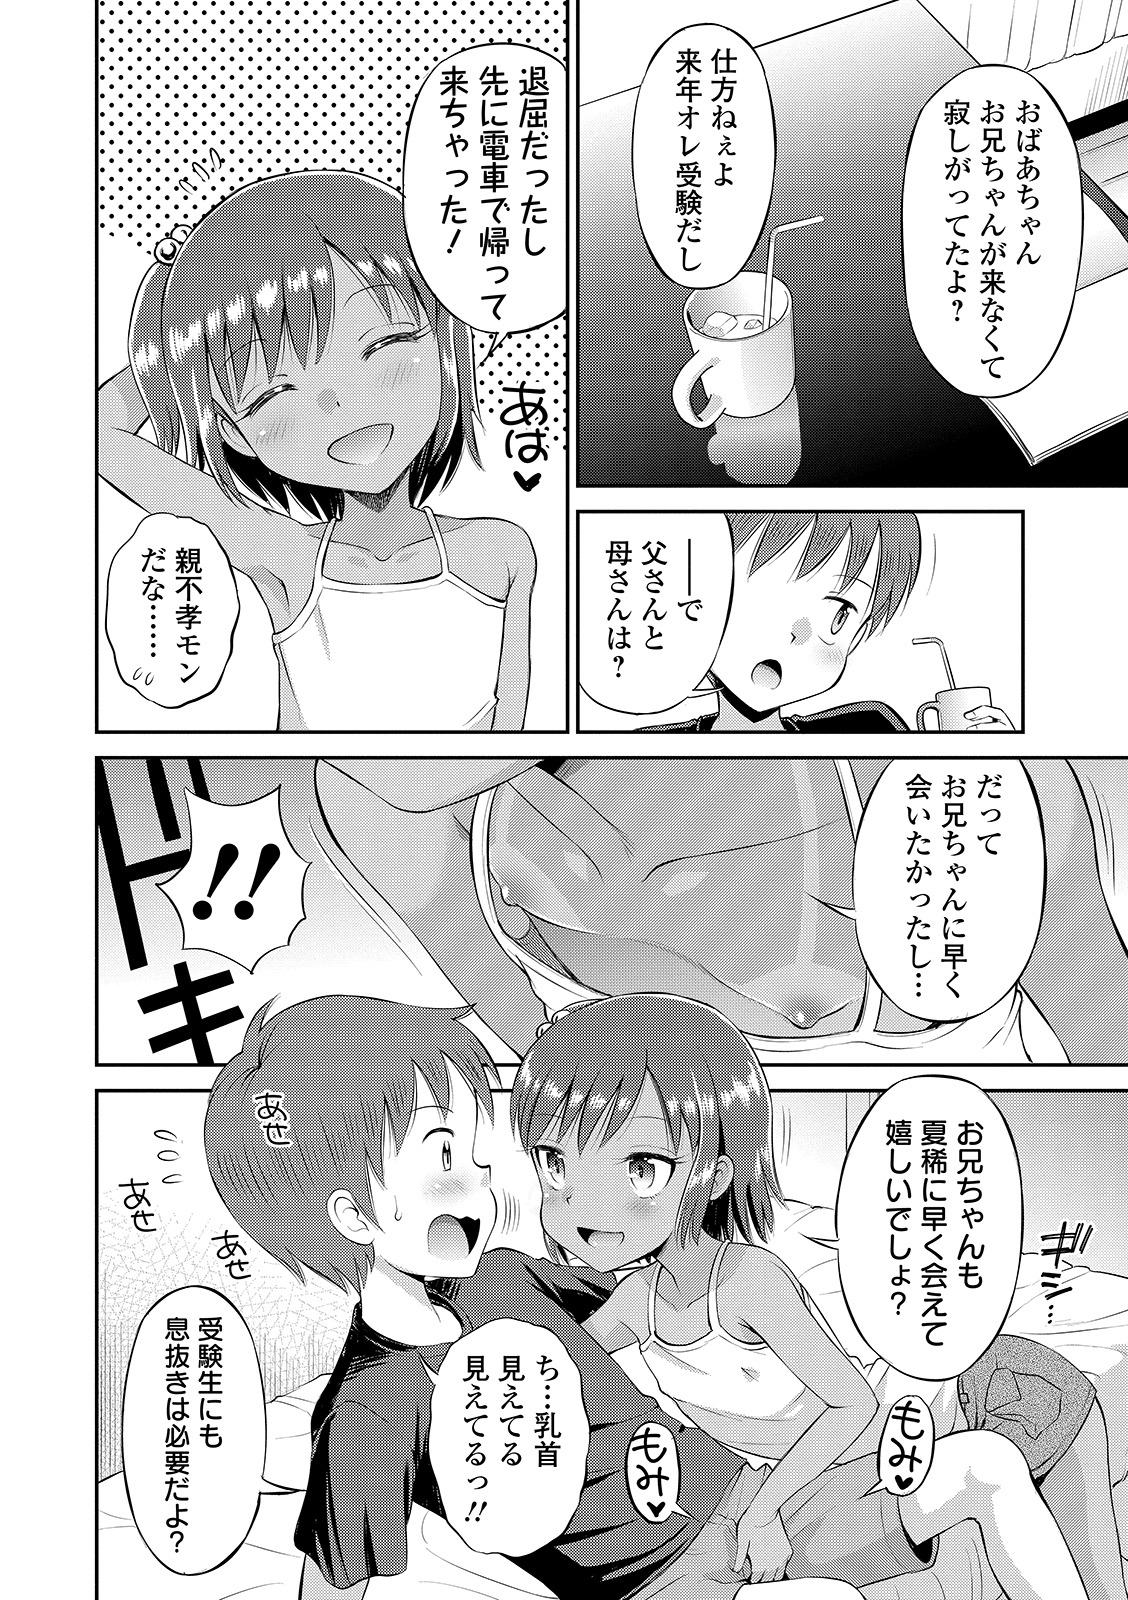 Compilation Watashi ga Onnanoko ni Naru made Tgirl - Page 8